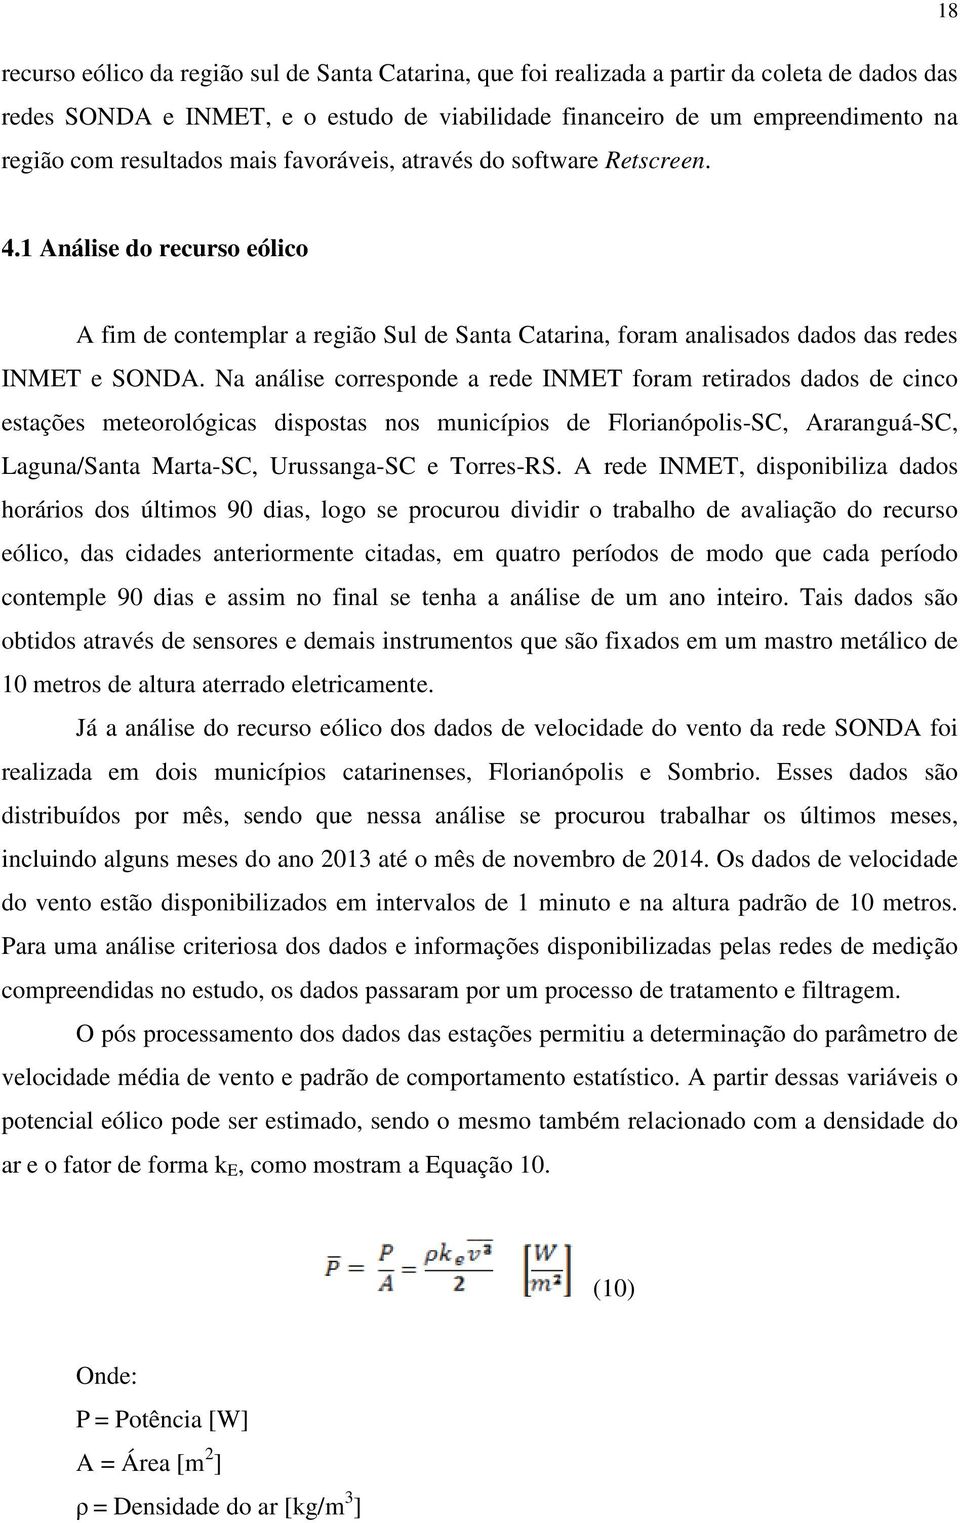 Na análise corresponde a rede INMET foram retirados dados de cinco estações meteorológicas dispostas nos municípios de Florianópolis-SC, Araranguá-SC, Laguna/Santa Marta-SC, Urussanga-SC e Torres-RS.